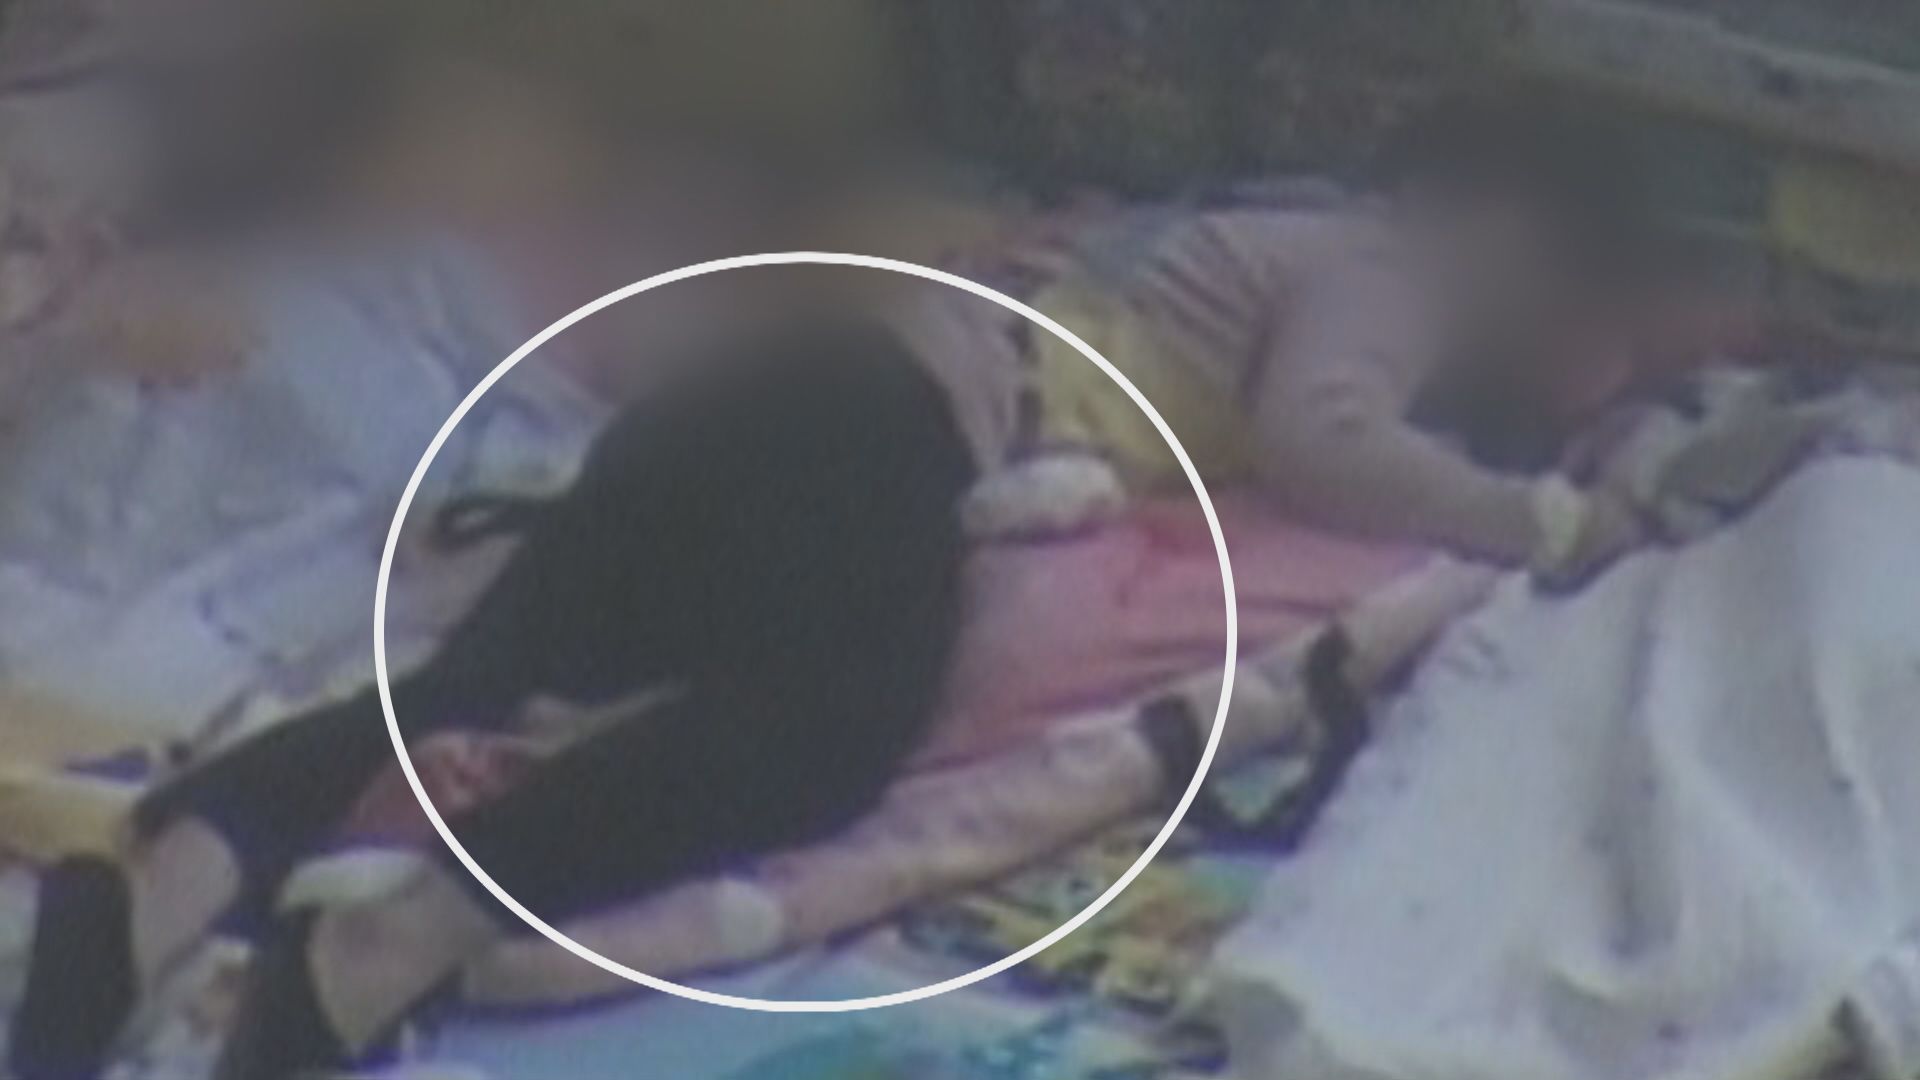 ‘아동학대치사’ 혐의를 받는 원장이 아이를 누르는 모습(CCTV 화면)